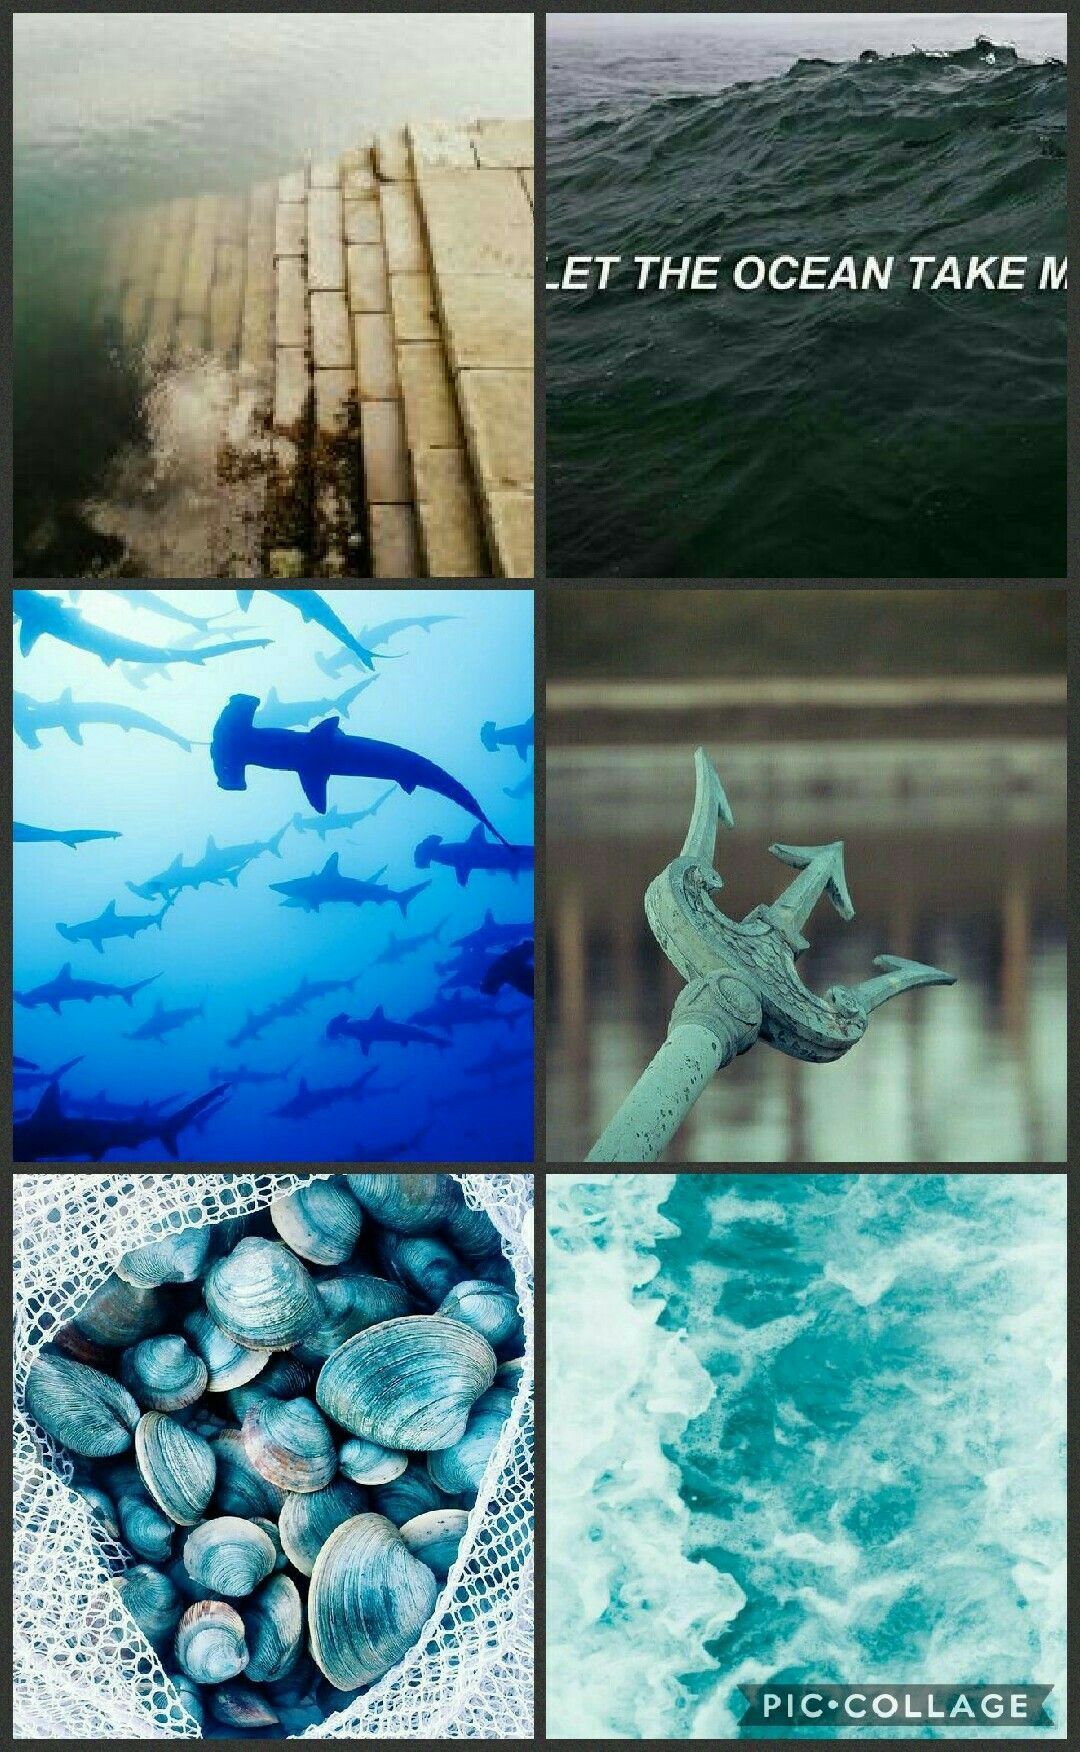  Aquaman Hintergrundbild 1080x1752. Aquaman aesthetic (my edit). Aquaman, Mera, Poseidon trident